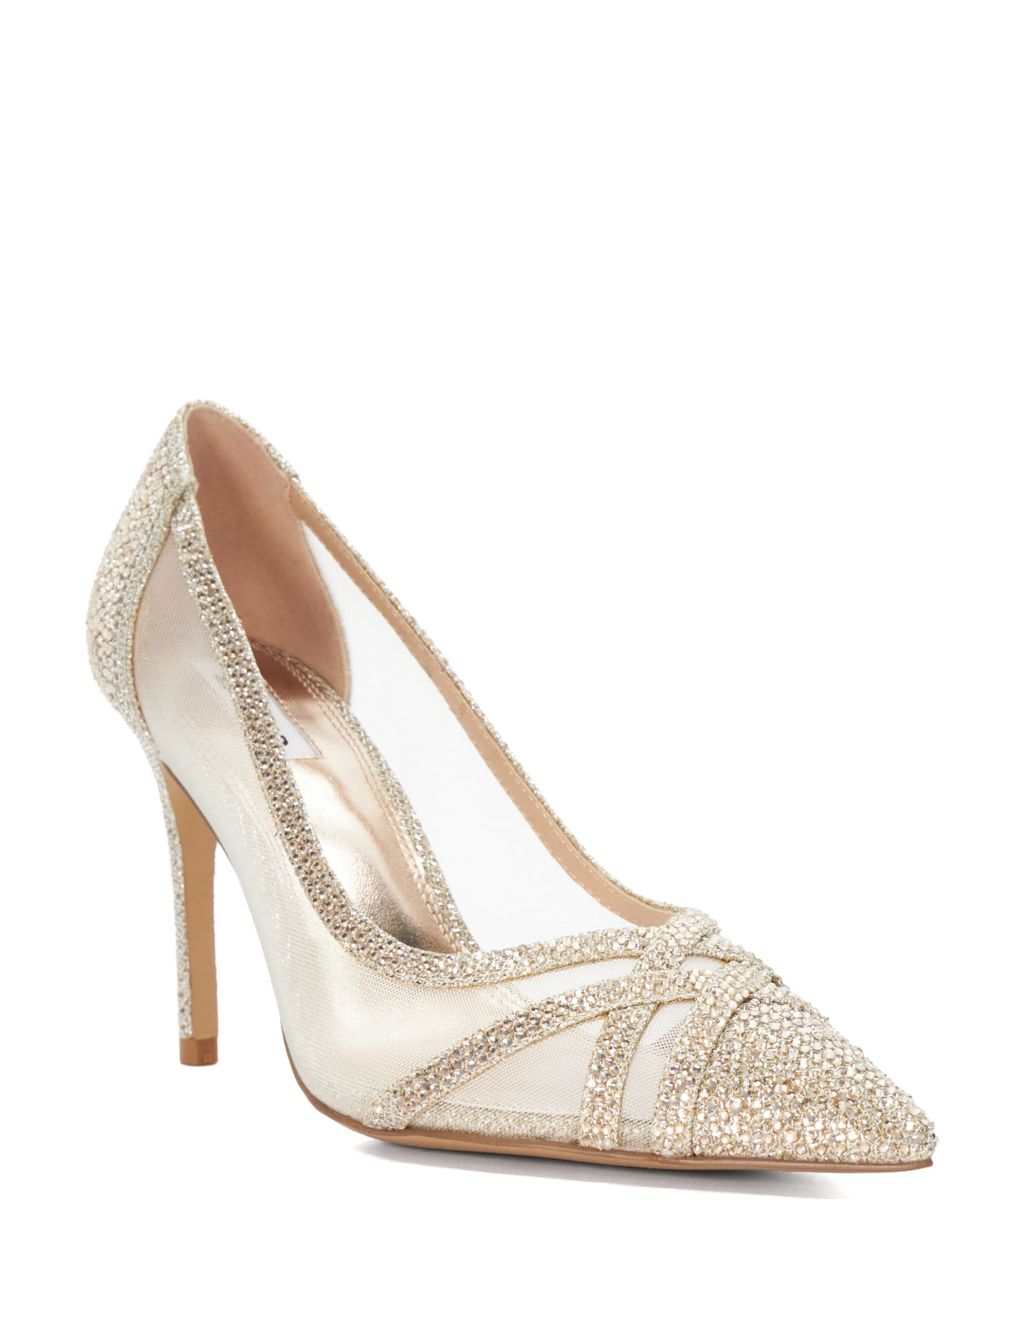 Glitter Slip On Stiletto Heel Court Shoes | Dune London | M&S